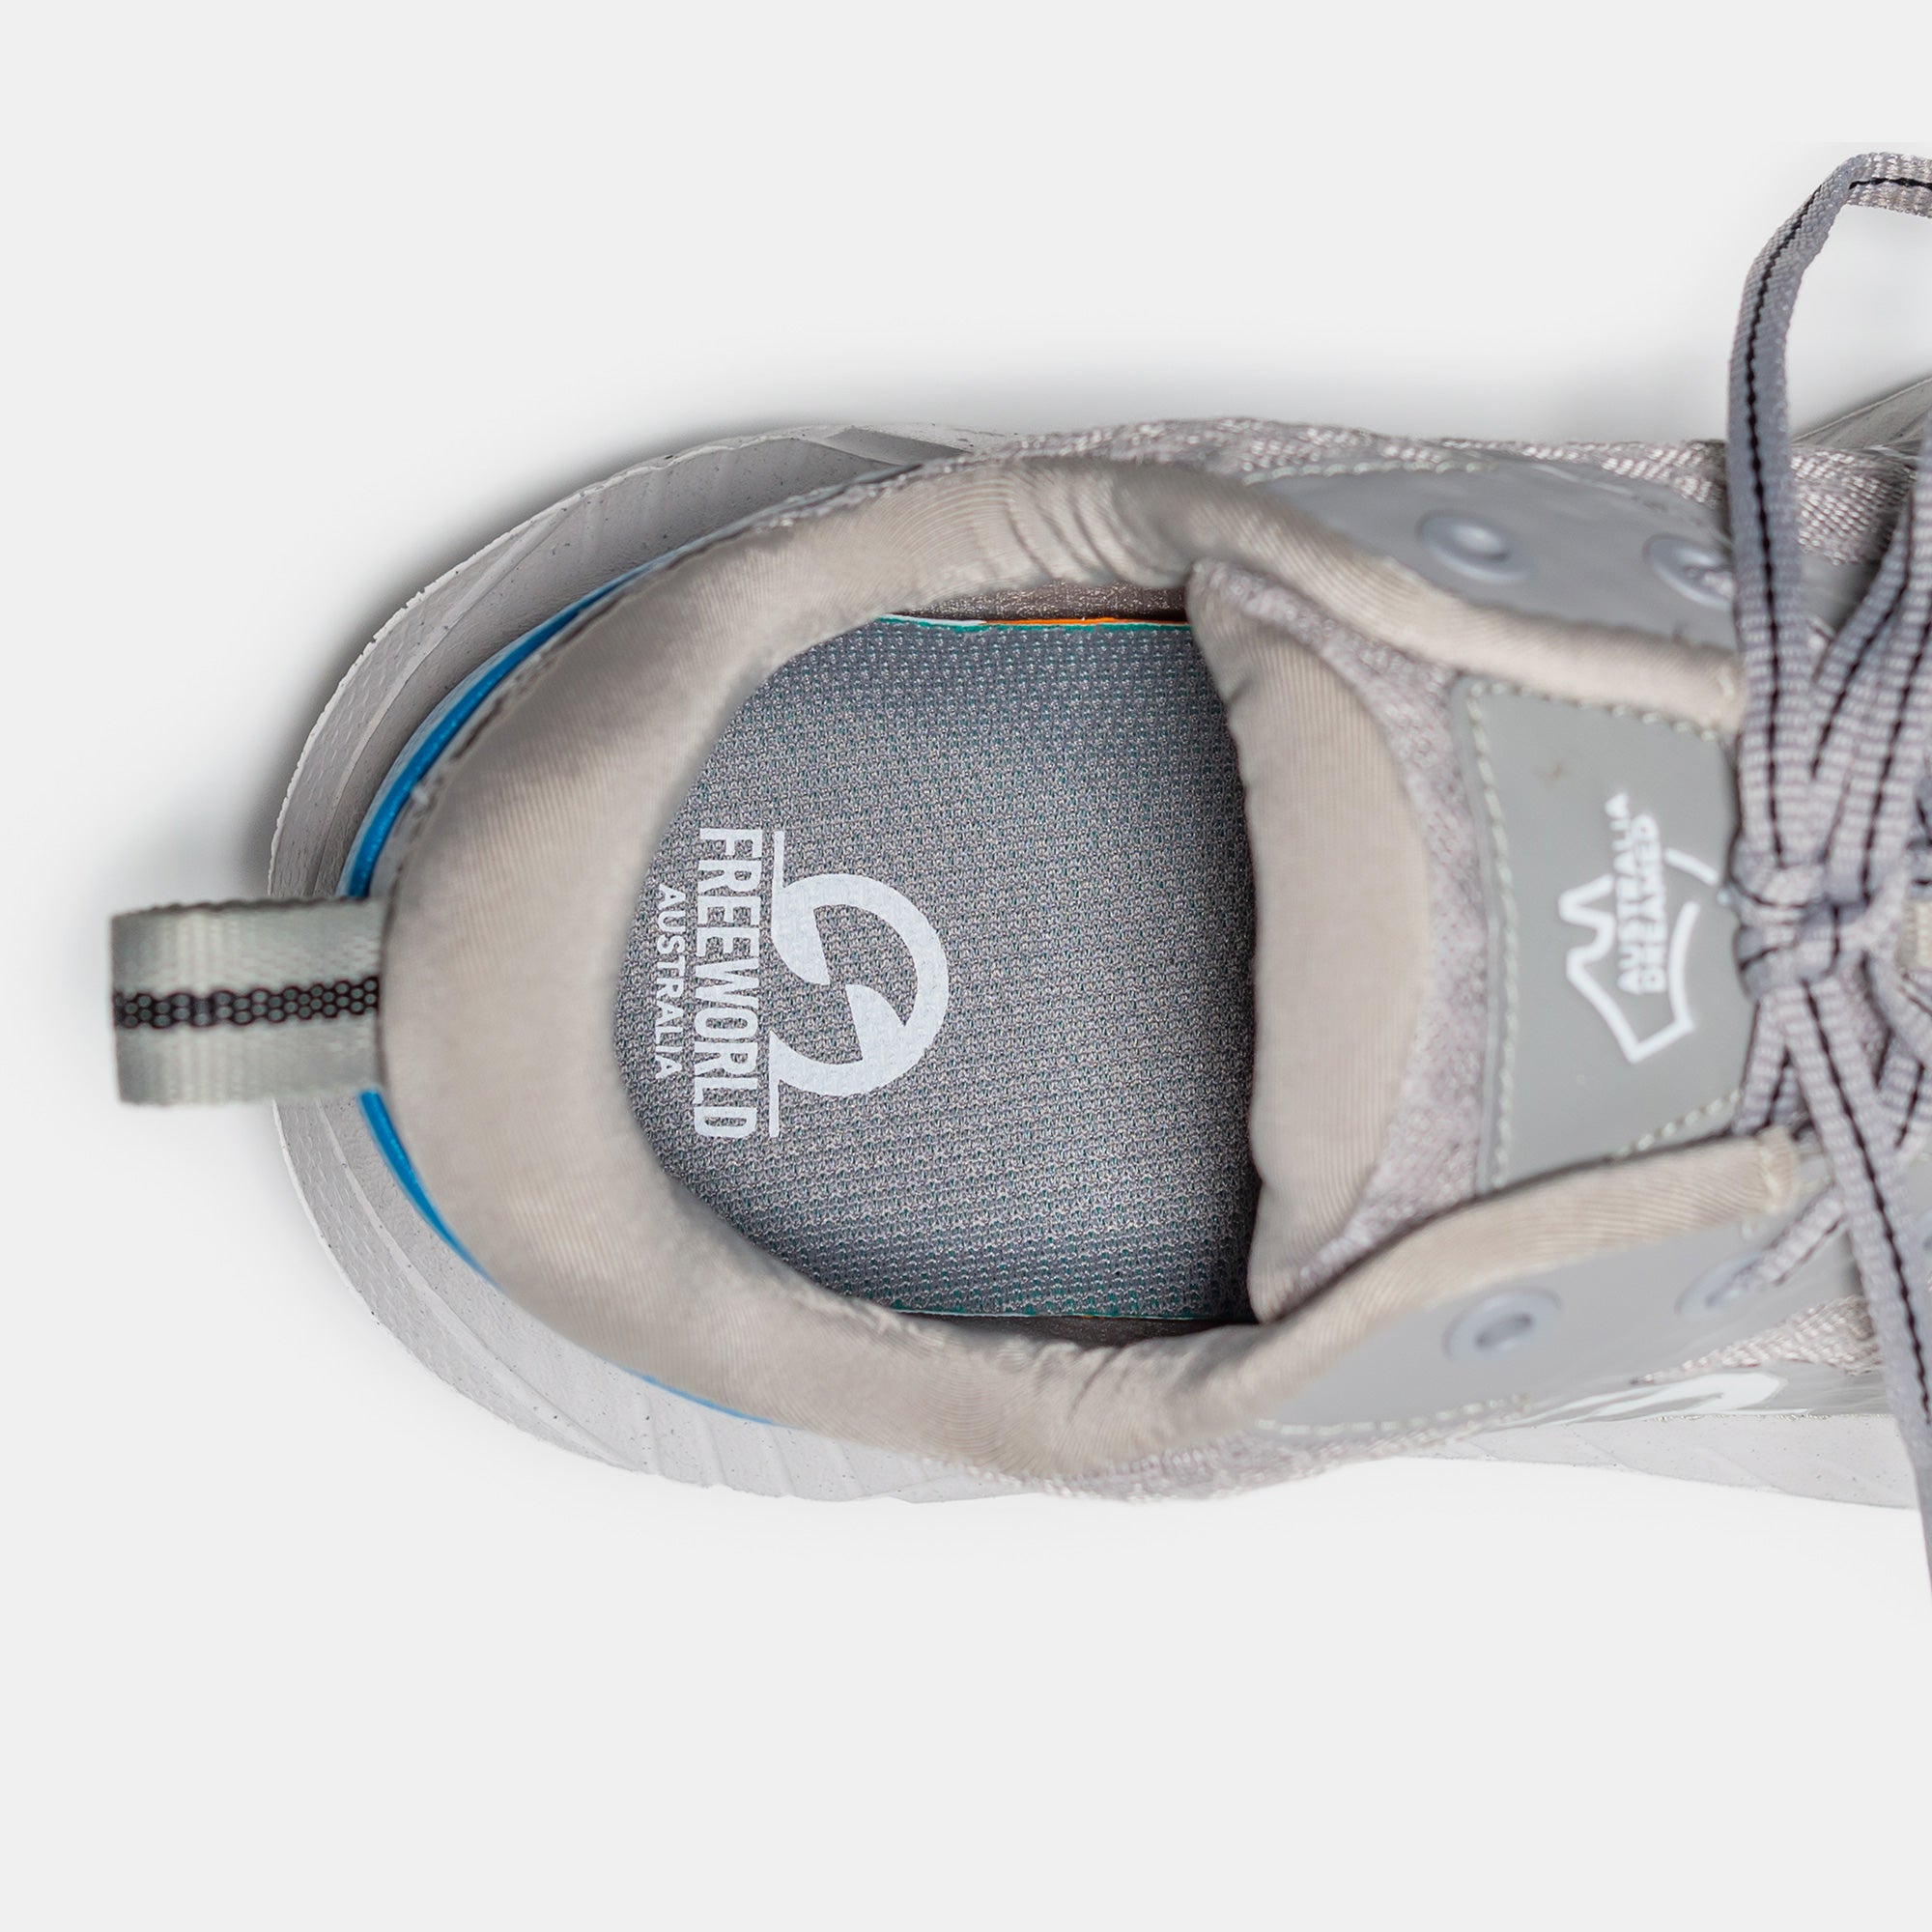 Baywalker Sneaker Walking Shoe - Grey